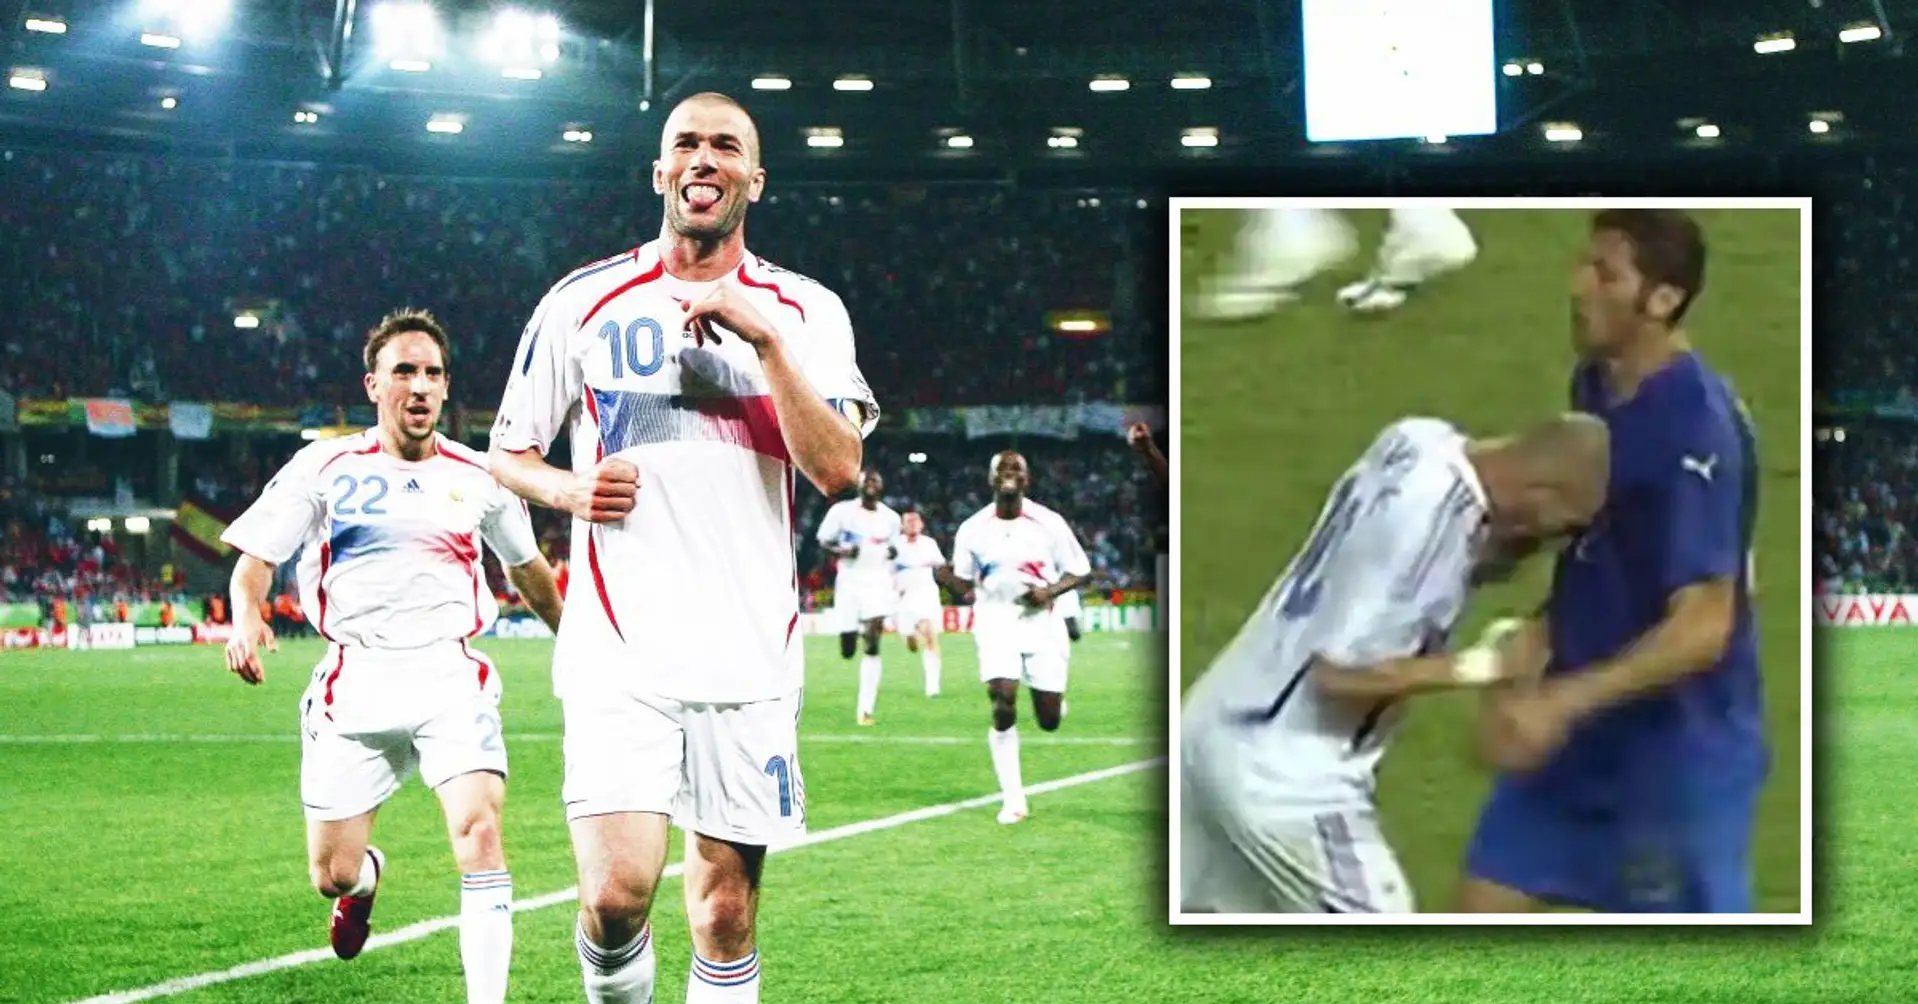 Sagnol: "Alle Spieler waren nach dem WM-Finale gegen Zidane. Im Jahr 2008 lud ich ihn zu meiner Hochzeit ein und er kam"